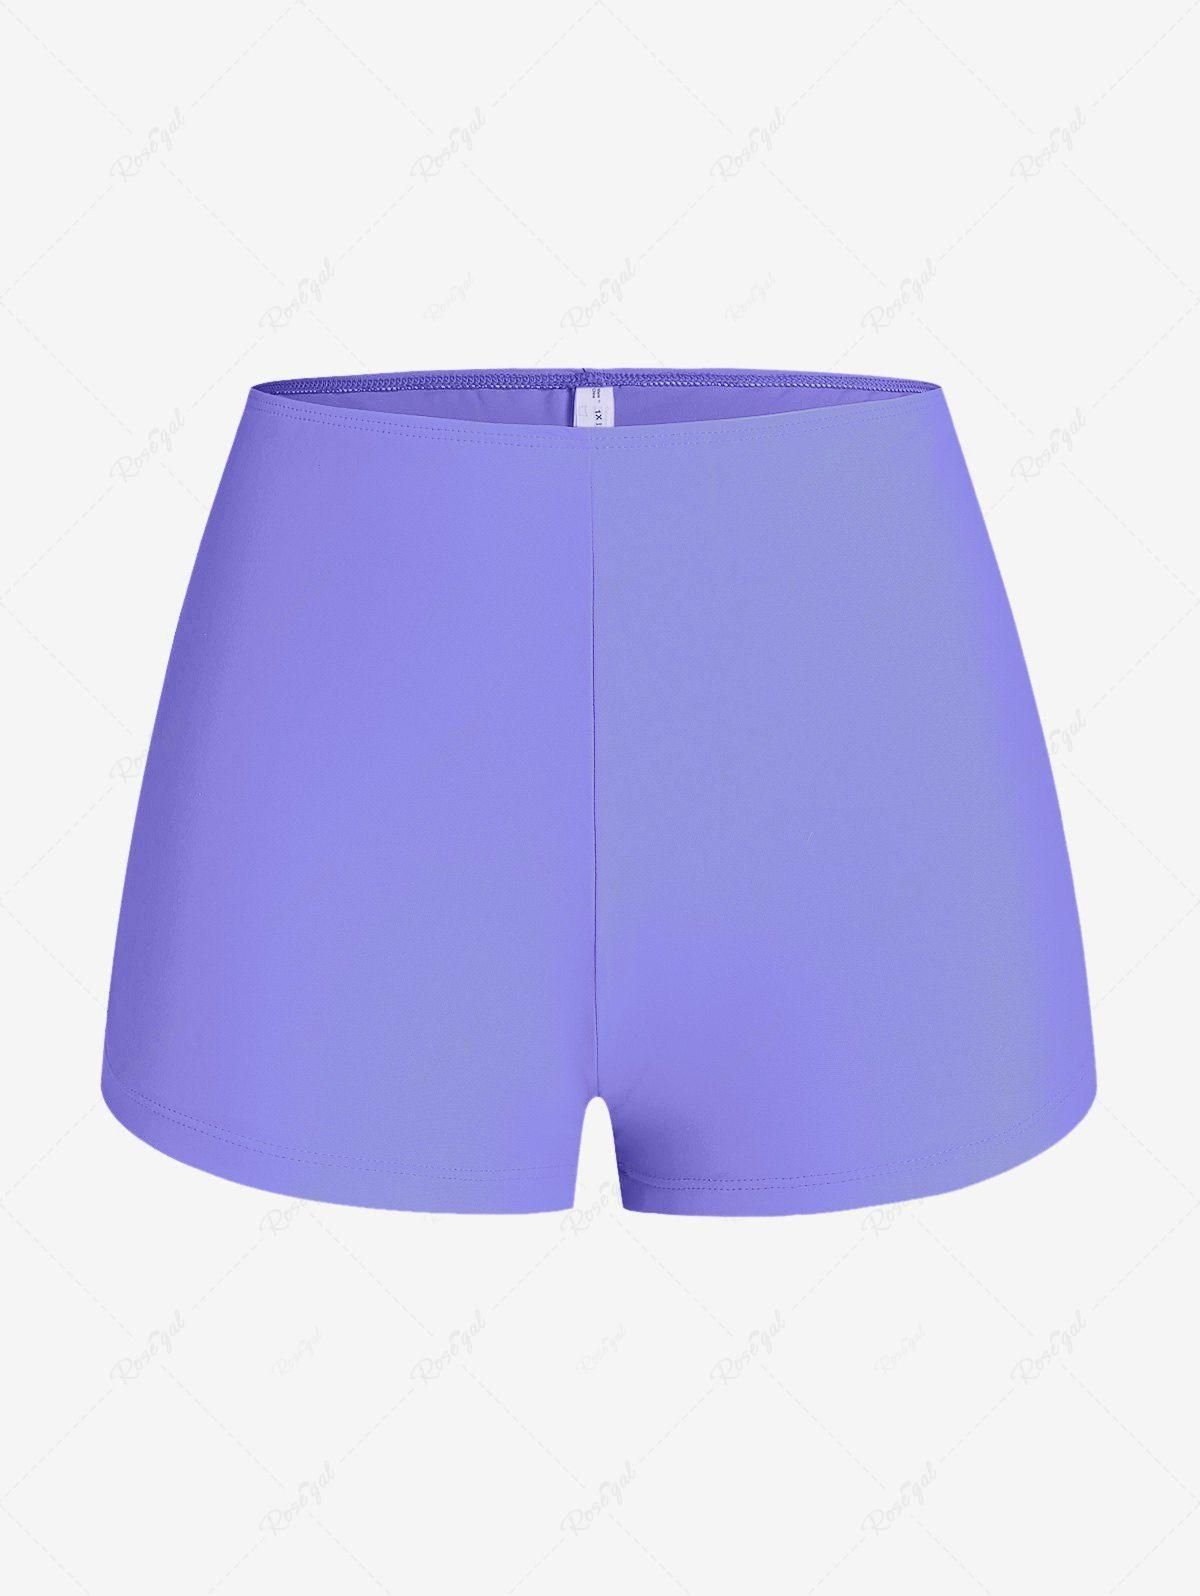 Plus Size Solid Basic Boyshorts Swimsuit - M | Us 10